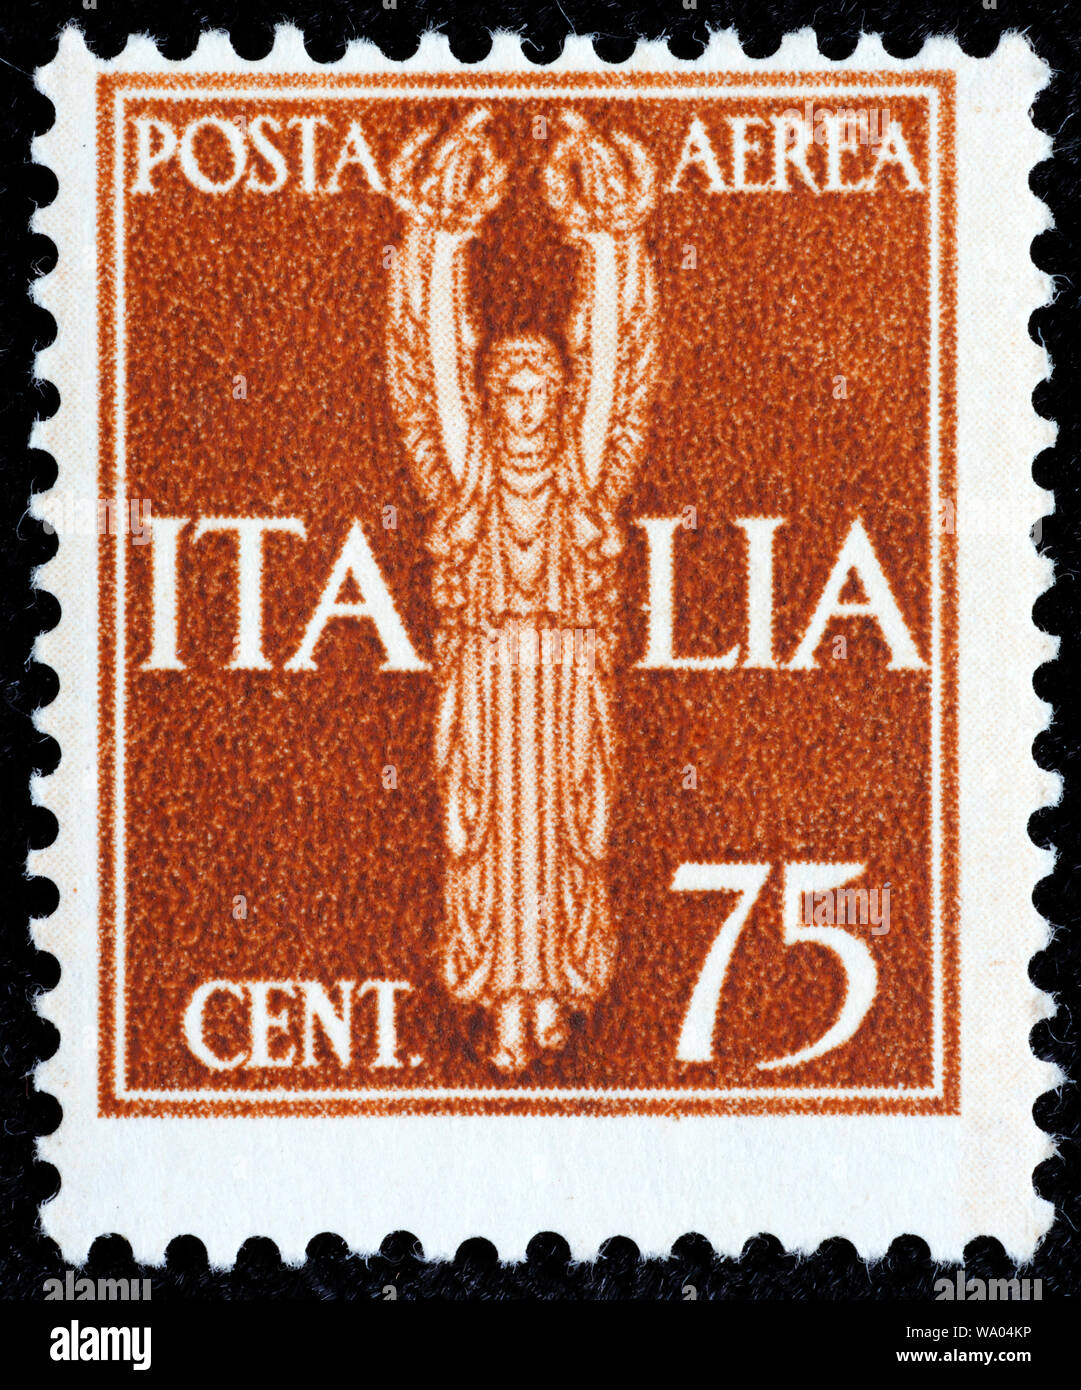 Victoria, postage stamp, Italy, 1930 Stock Photo